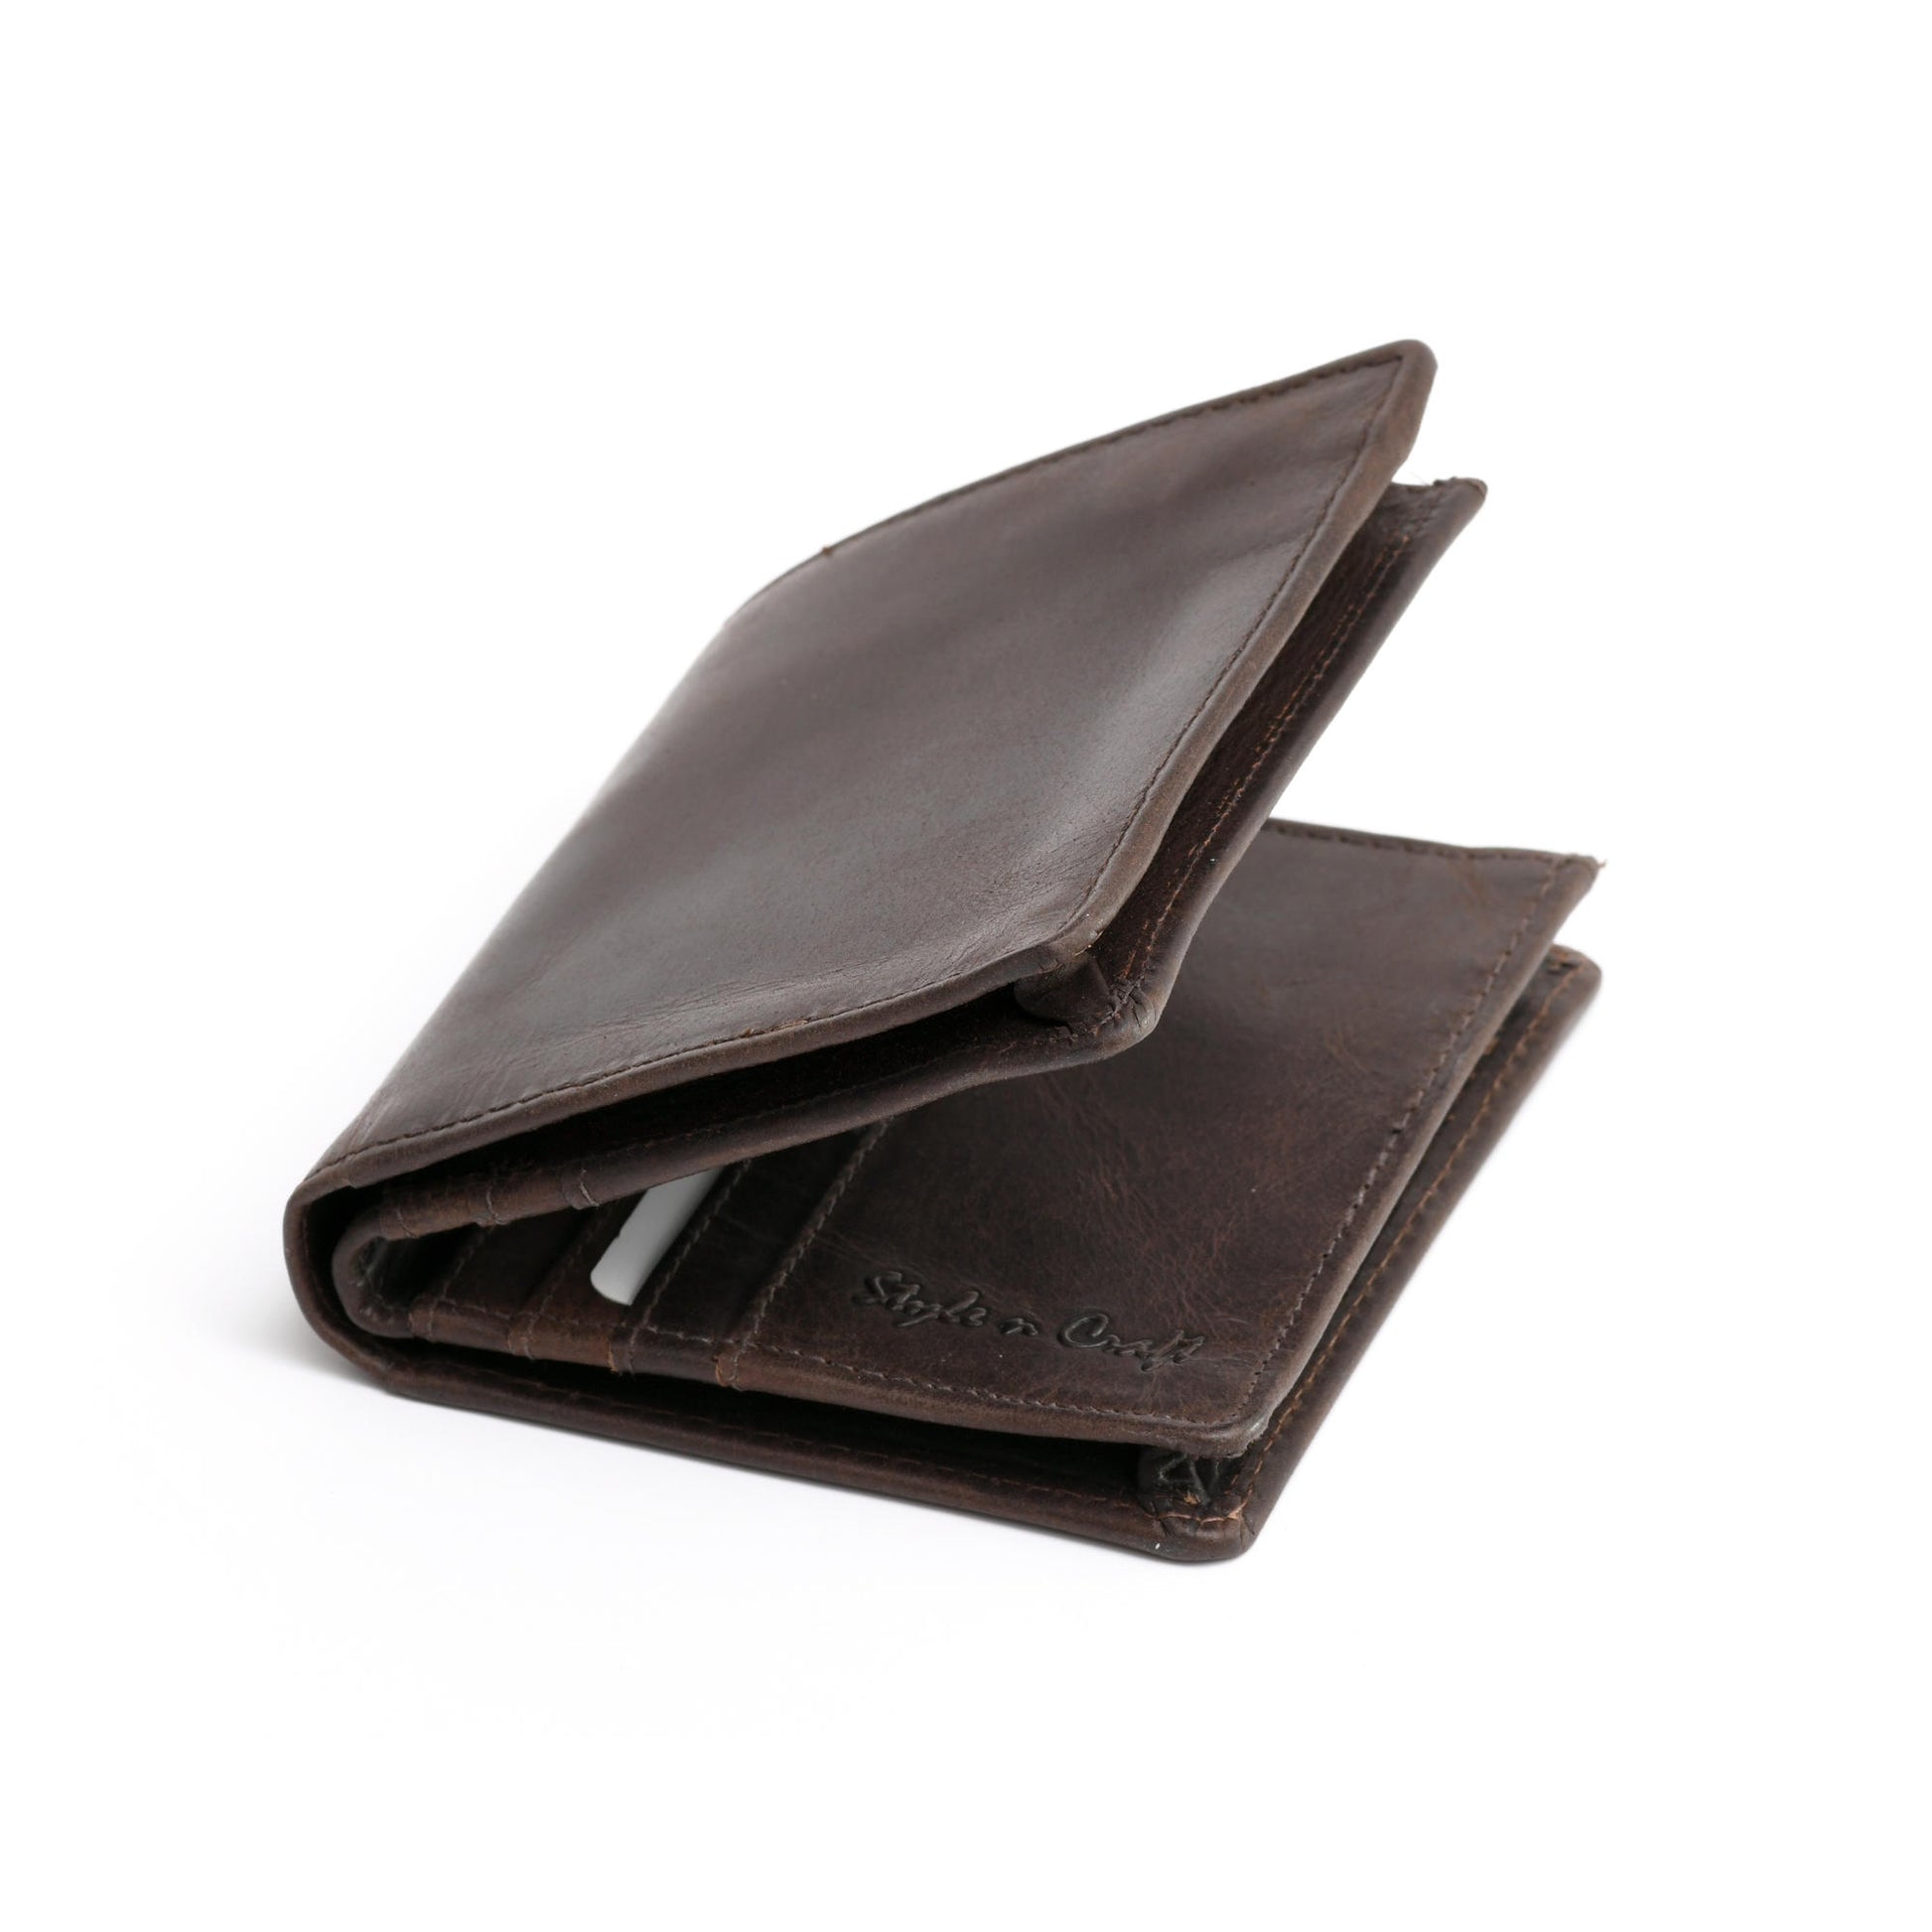 Men's Bifold Top Grain Leather Wallet, Light Brown